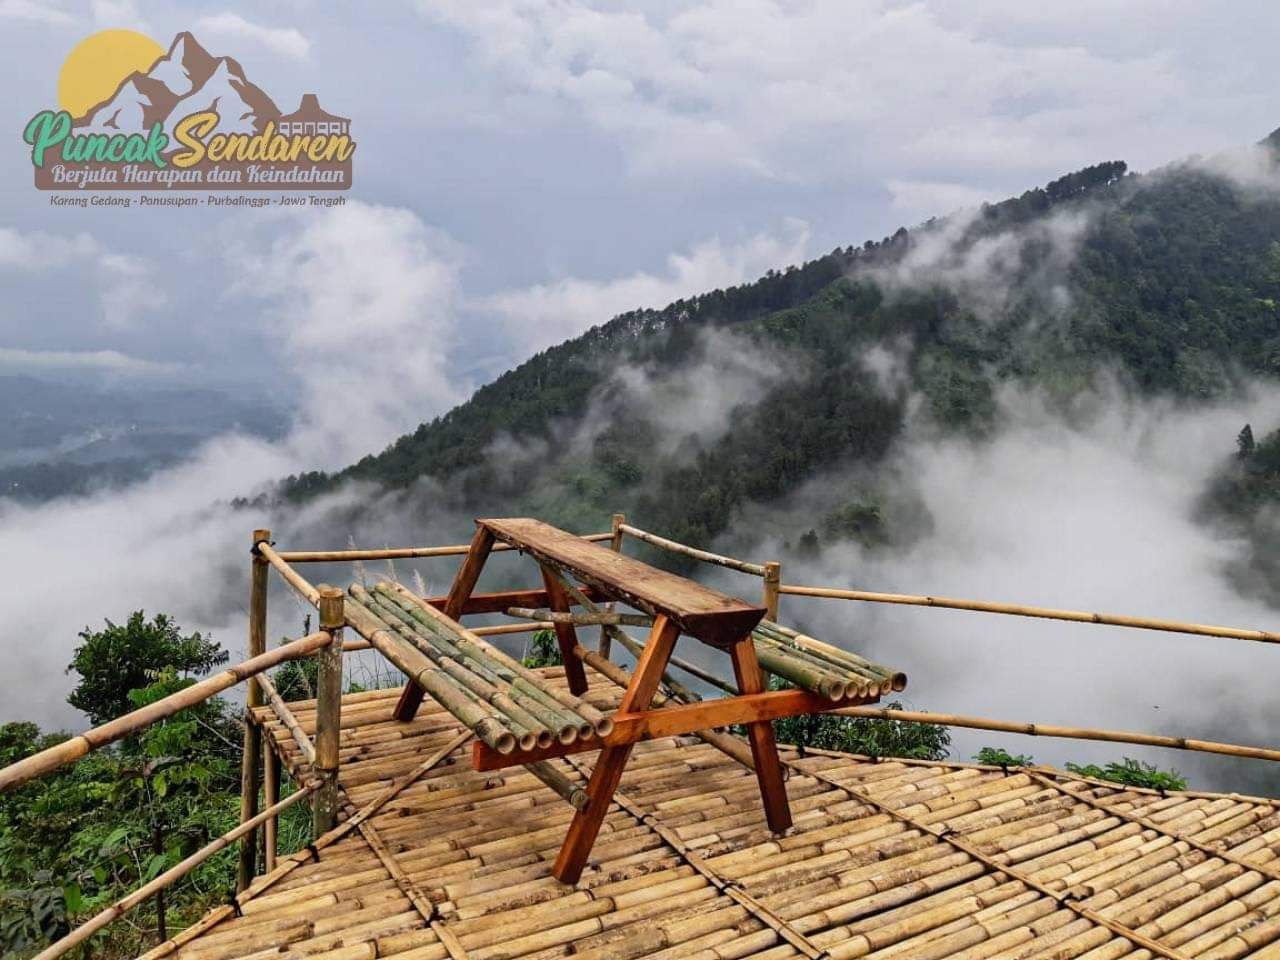 Puncak Sendaren. 6 Rekomendasi Wisata Alam yang Wajib Anda Kunjungi di Purbalingga, Mulai Dari Curug Hingga Puncak Gunung